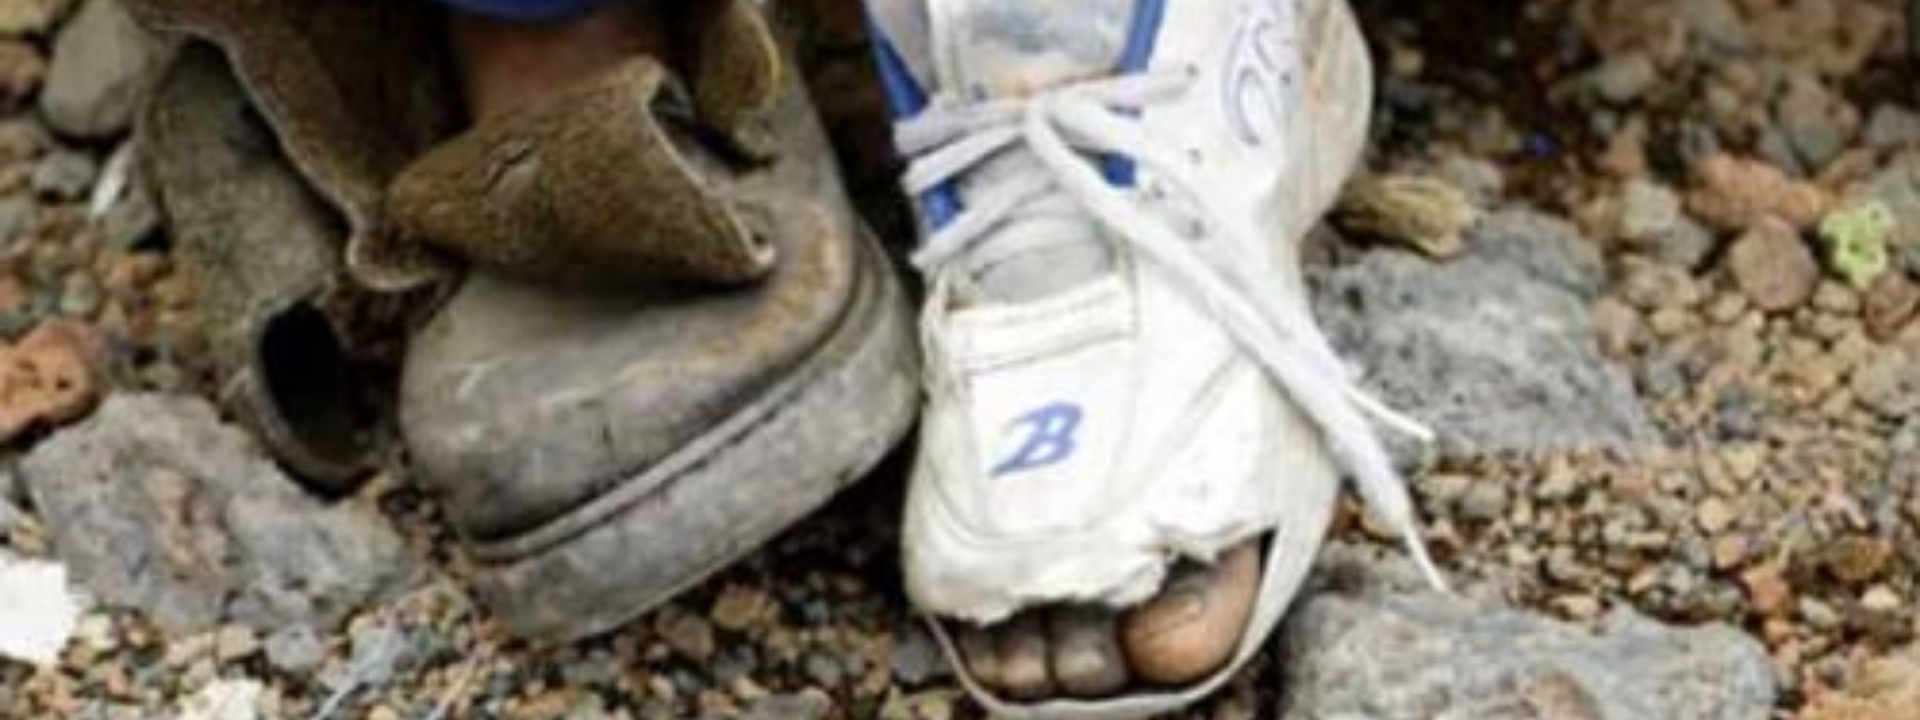 Broken soles and broken shoes